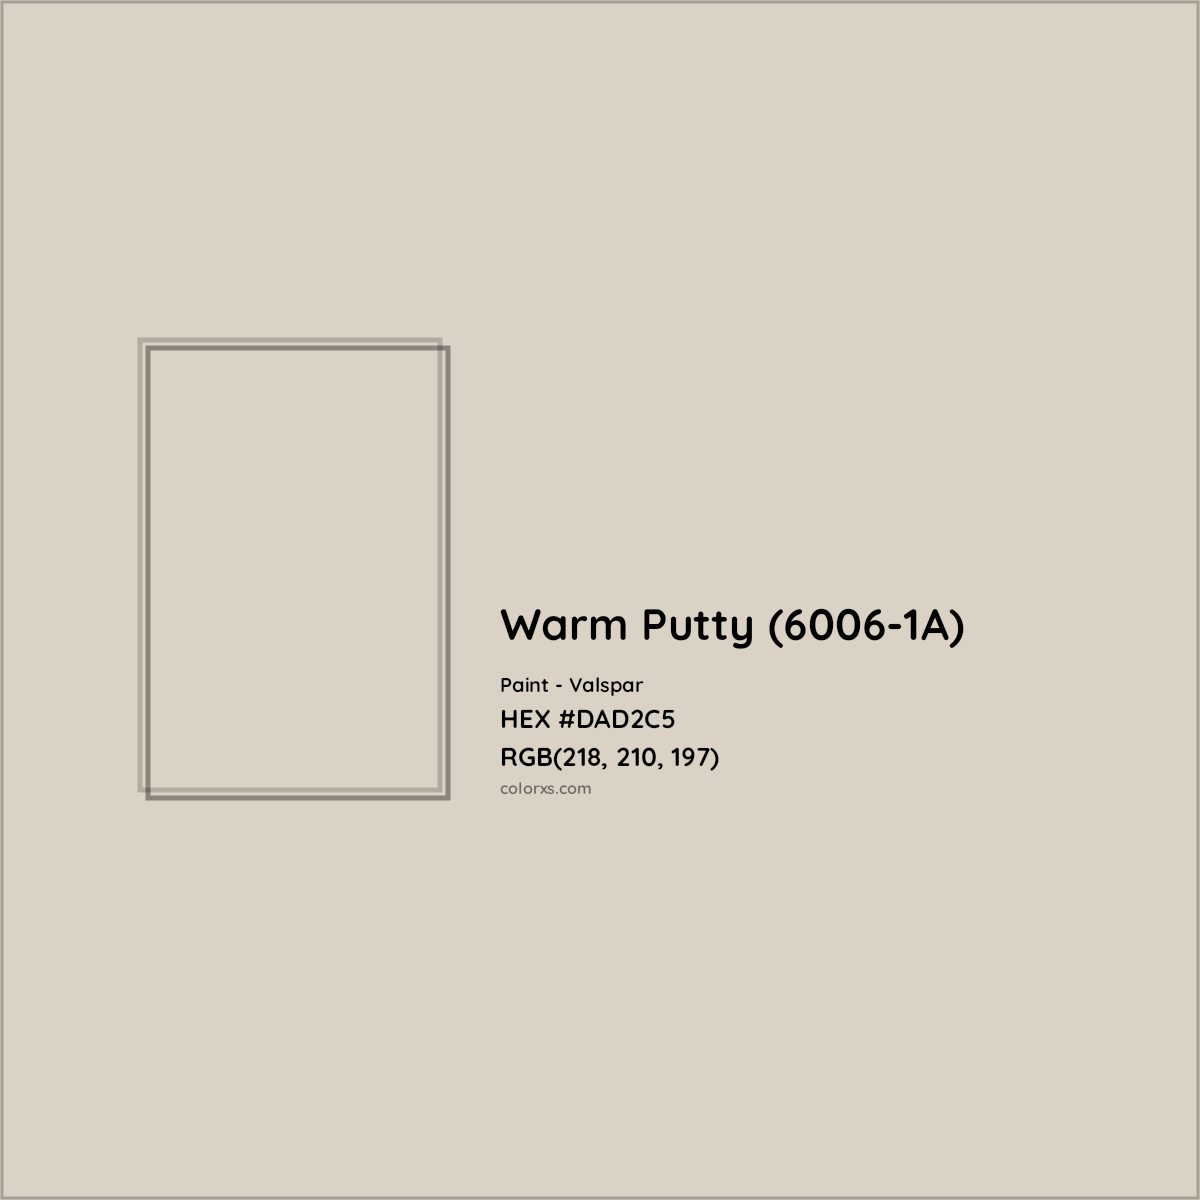 HEX #DAD2C5 Warm Putty (6006-1A) Paint Valspar - Color Code